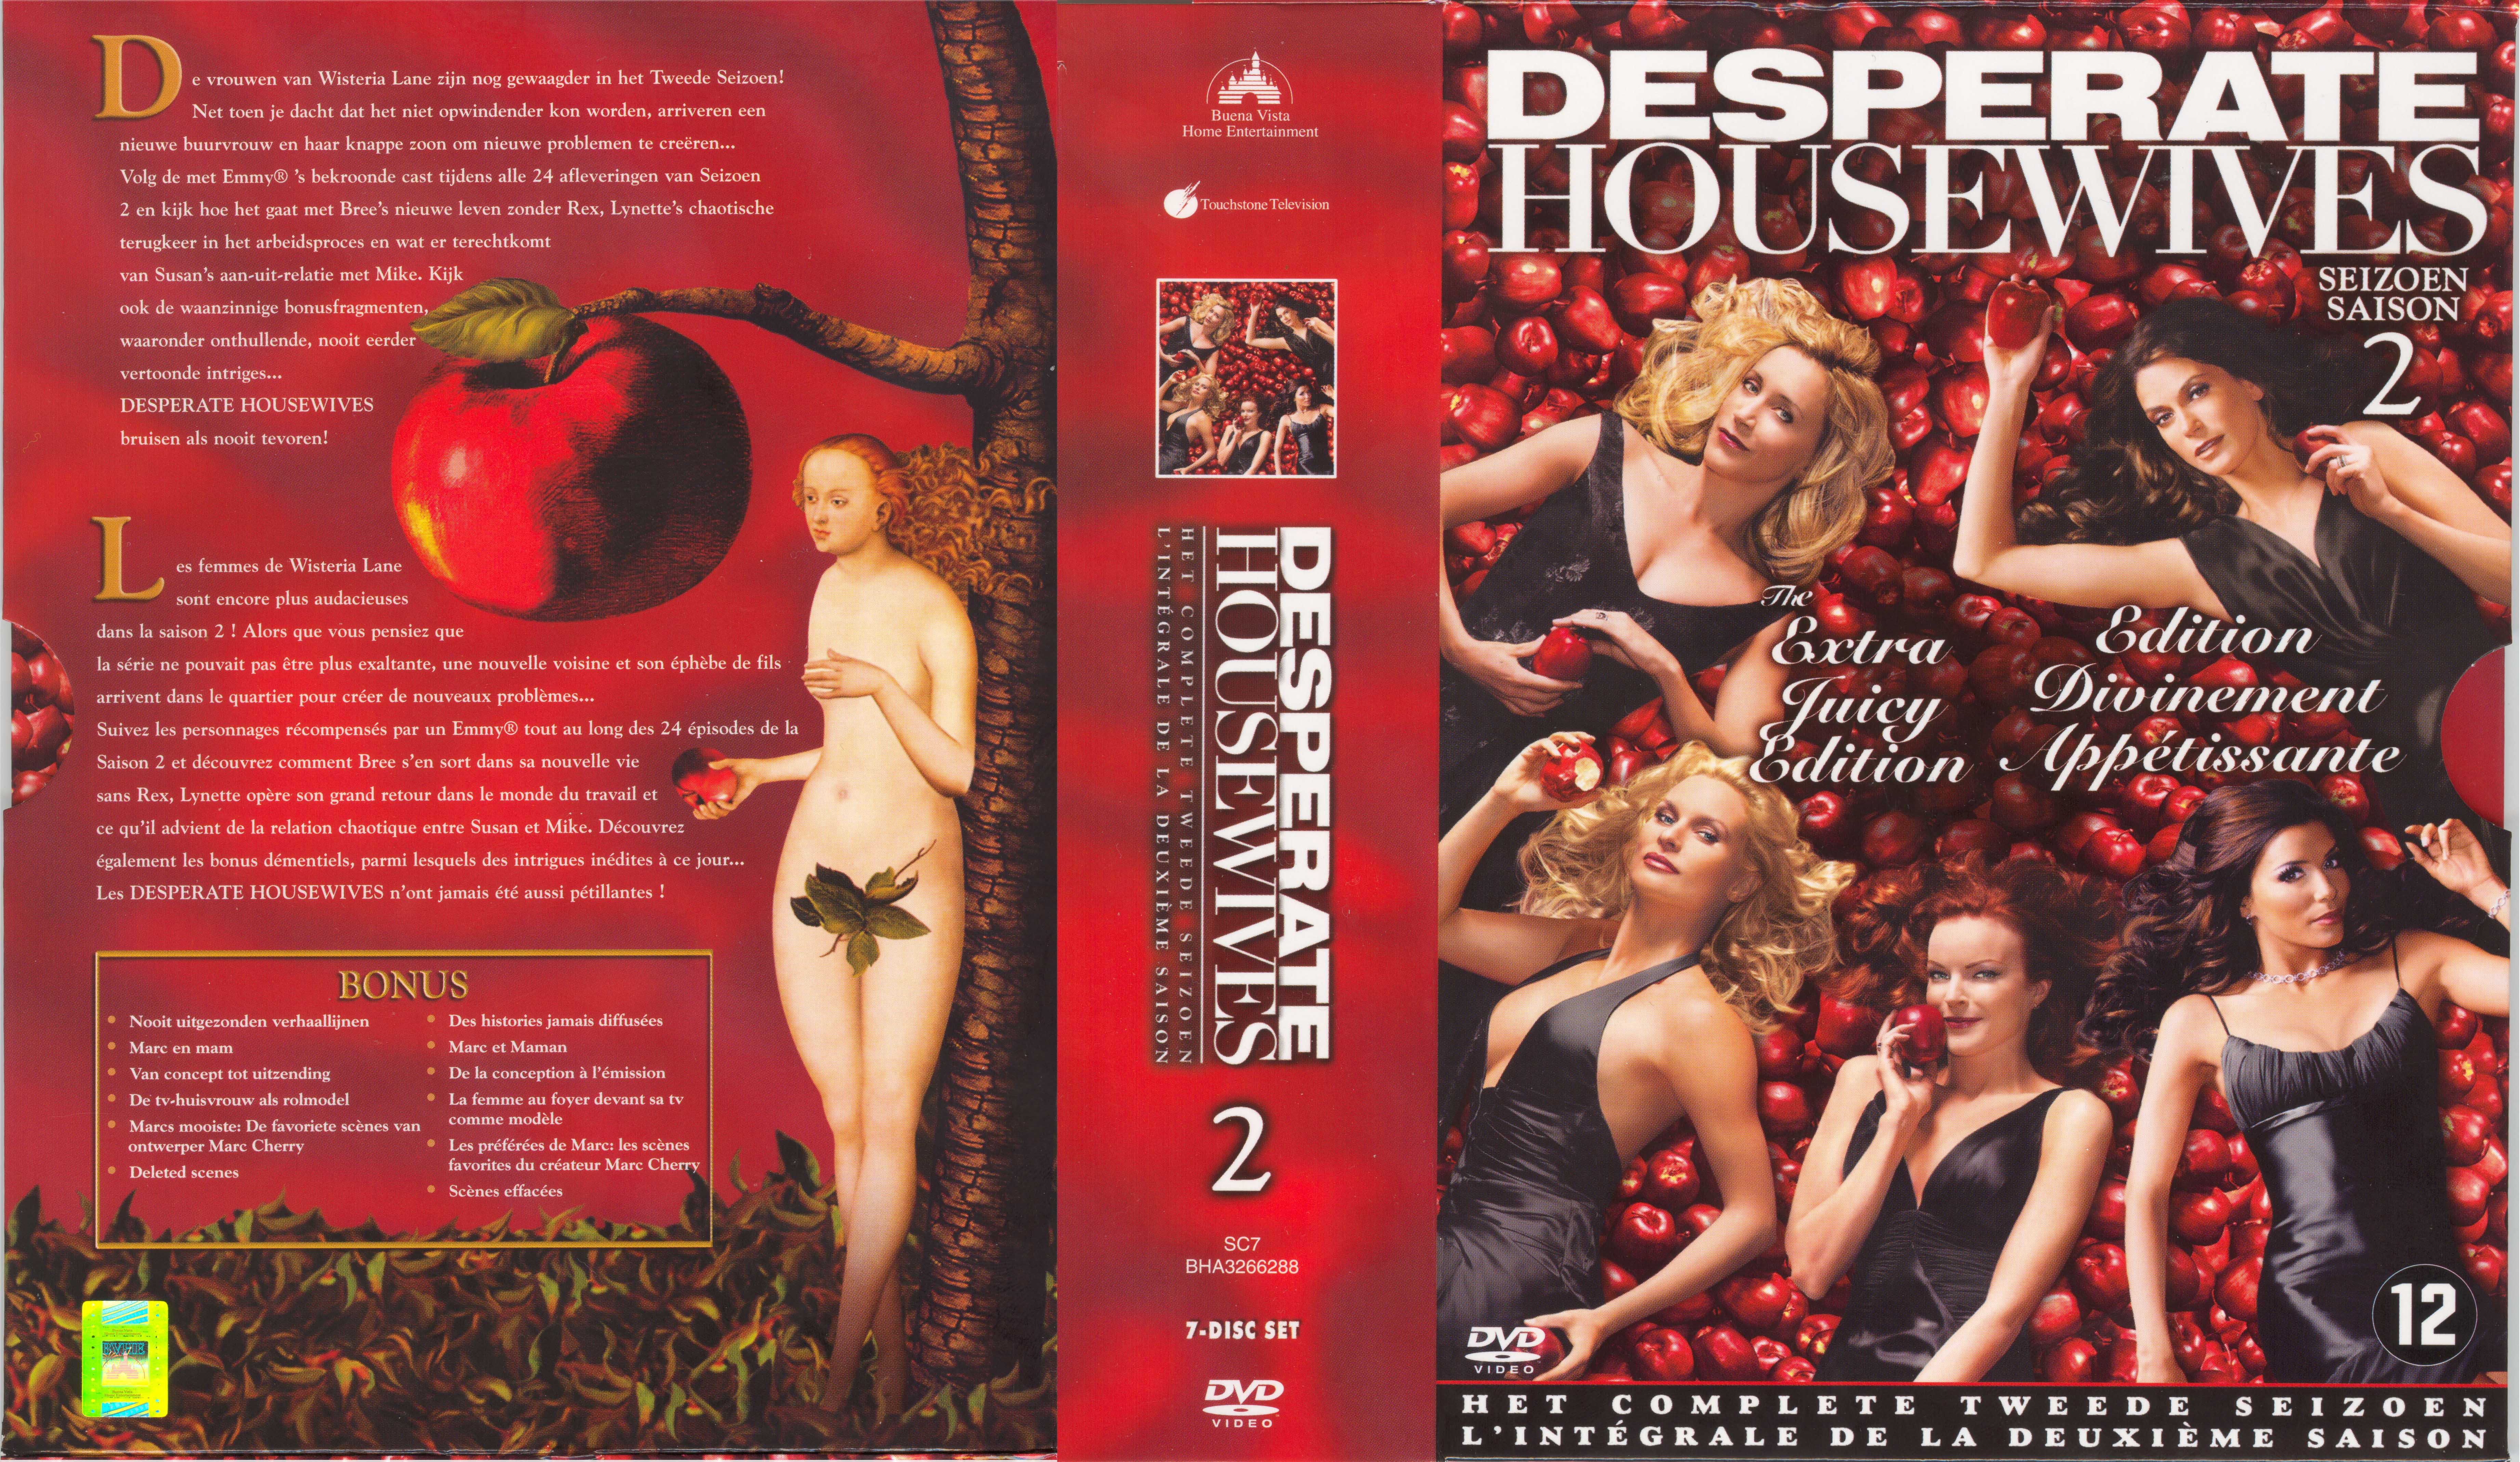 Jaquette DVD Desperate housewives Saison 2 COFFRET